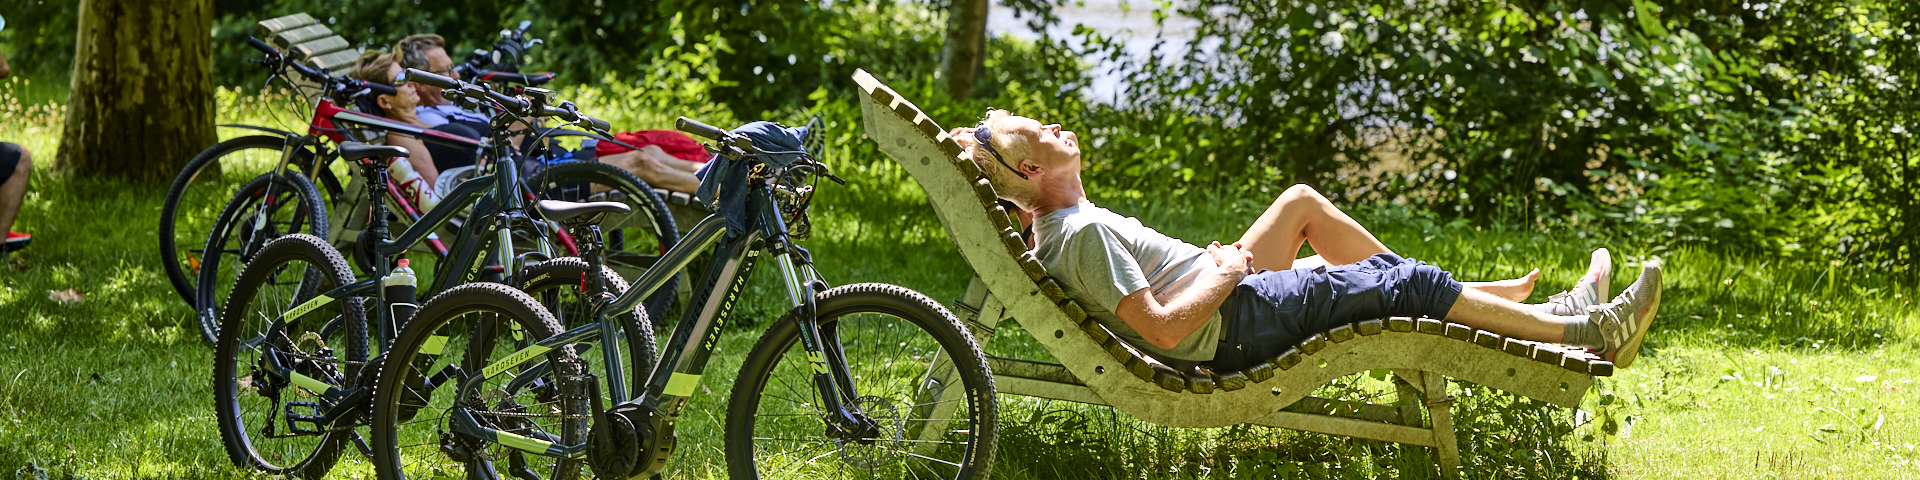 Fahrradfahrer liegen im grünen auf einer Himmelsliege und sonnen sicht.